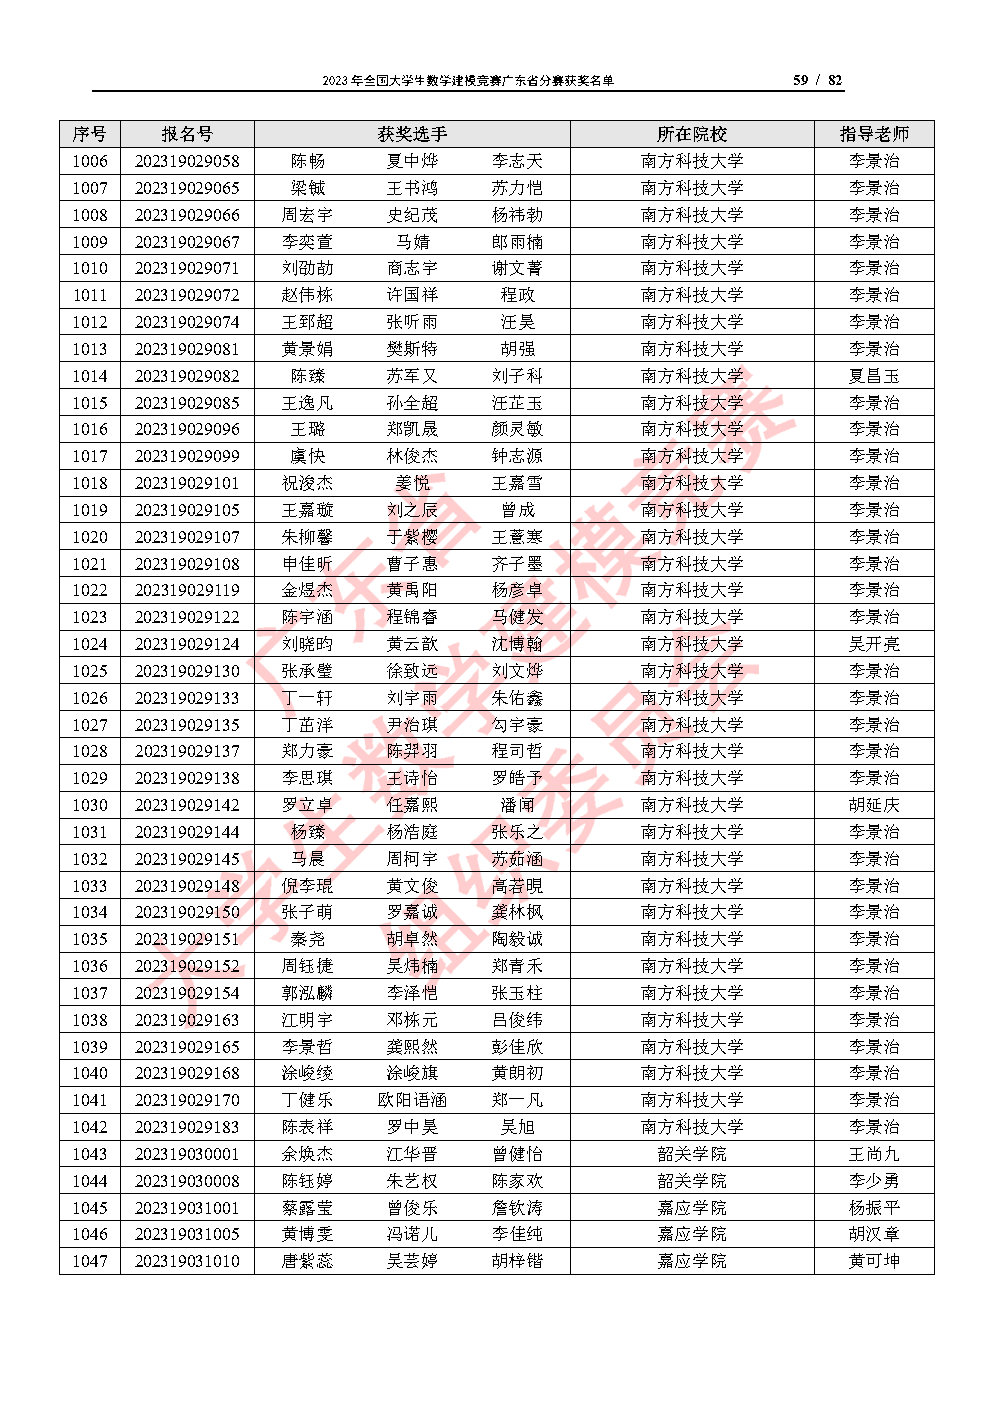 2023年全国大学生数学建模竞赛广东省分赛获奖名单_Page59.jpg